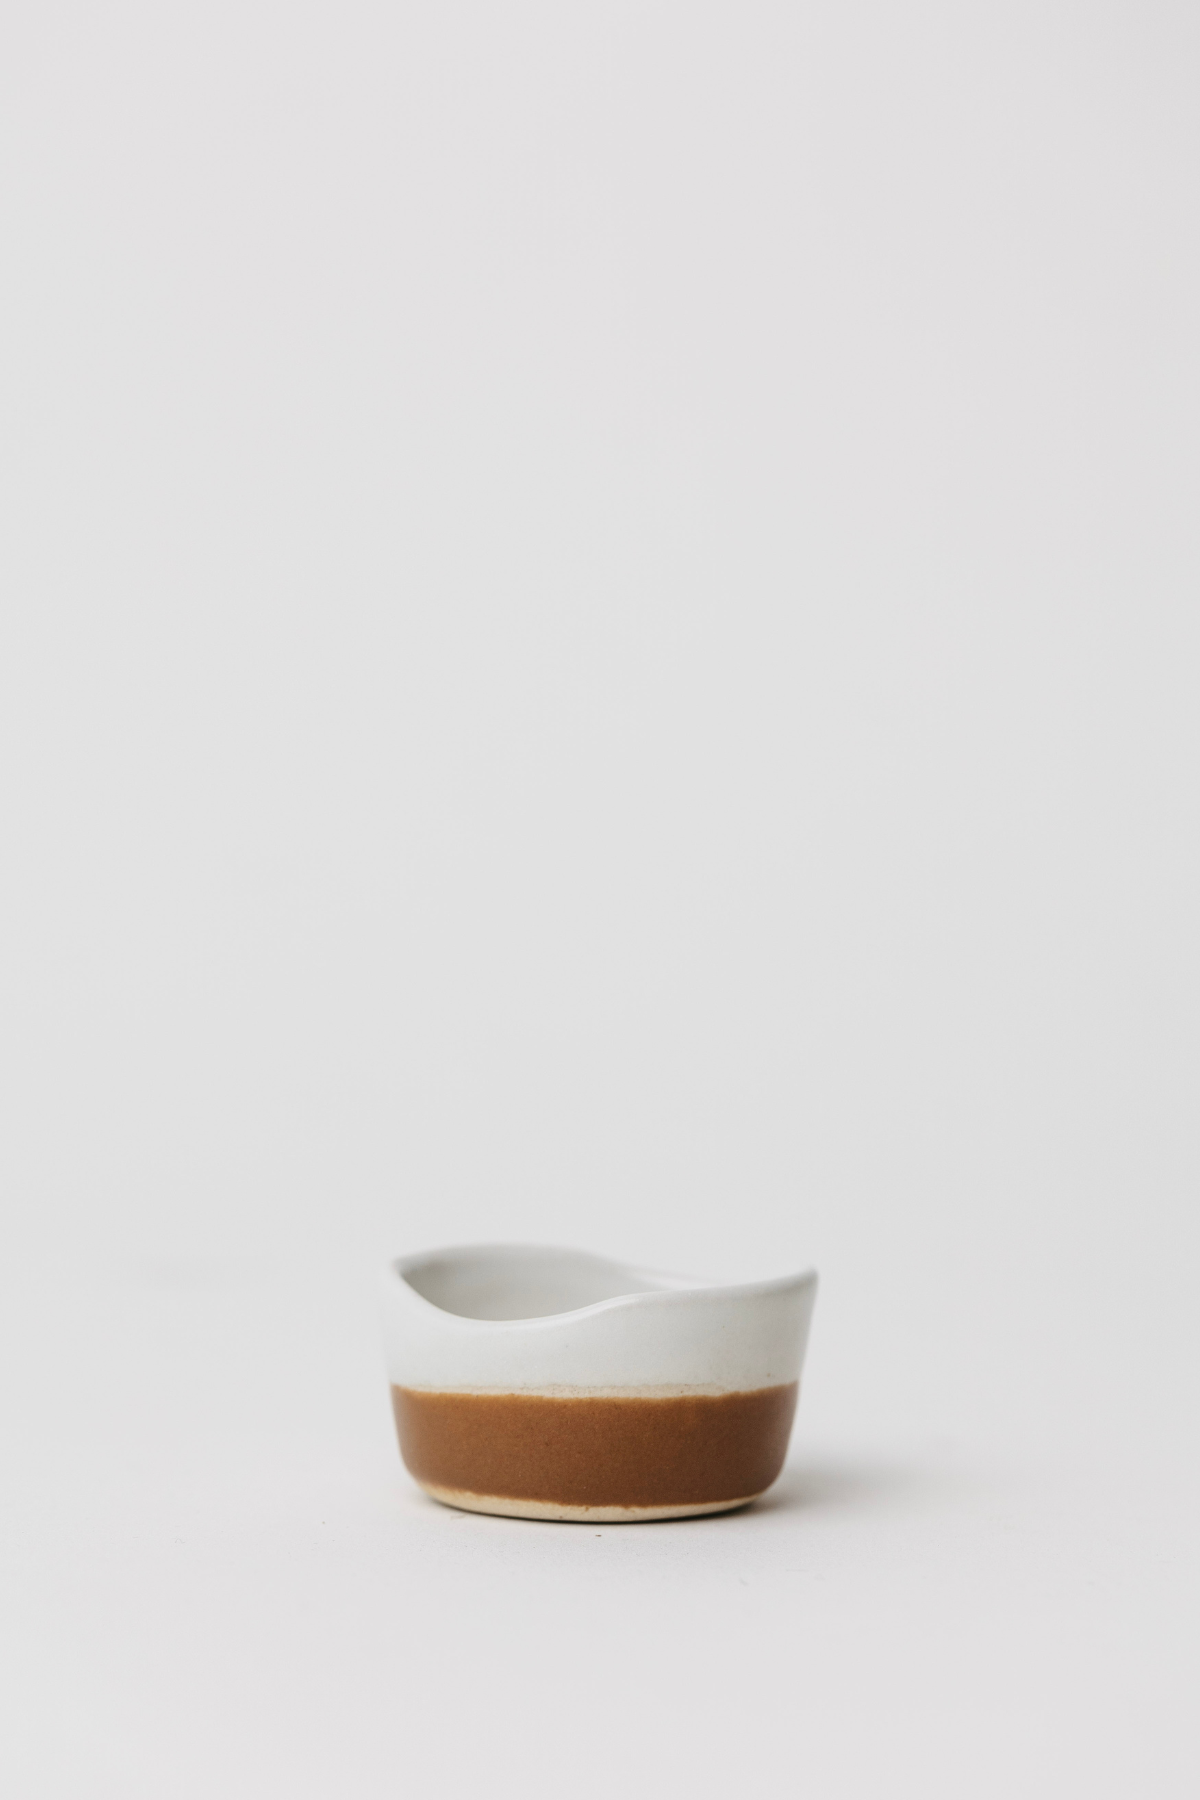 Waylon Pinch Bowl - Brown/White - Set of 4